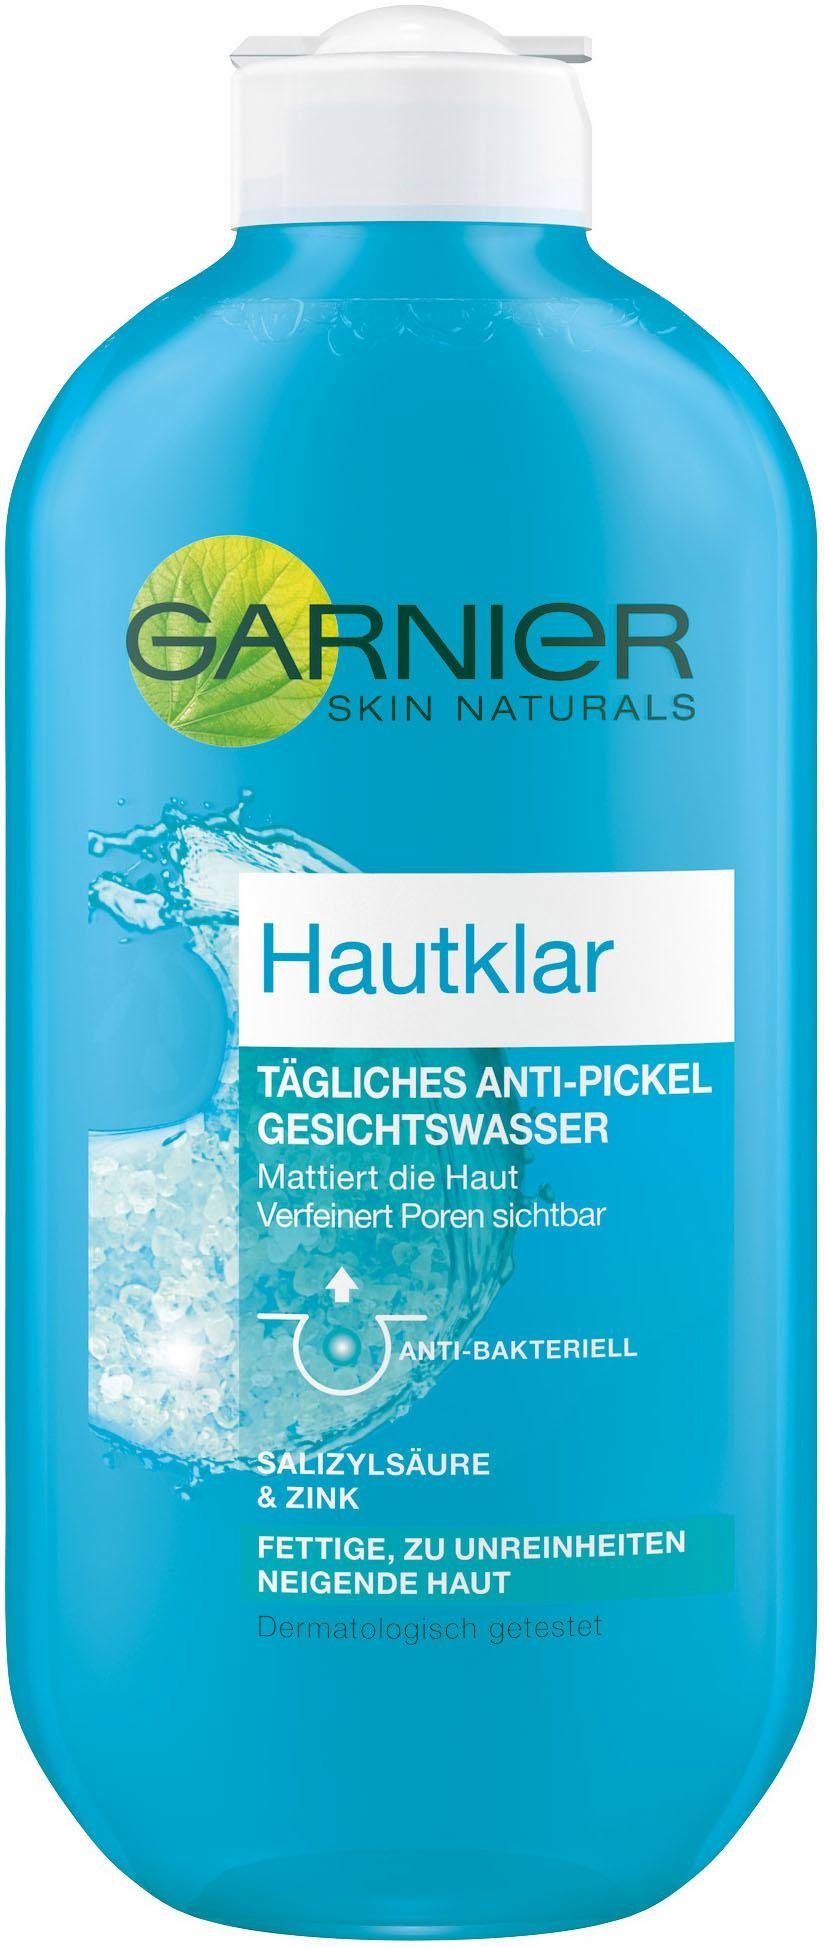 Anti-Pickel Gesichtswasser Hautklar, GARNIER